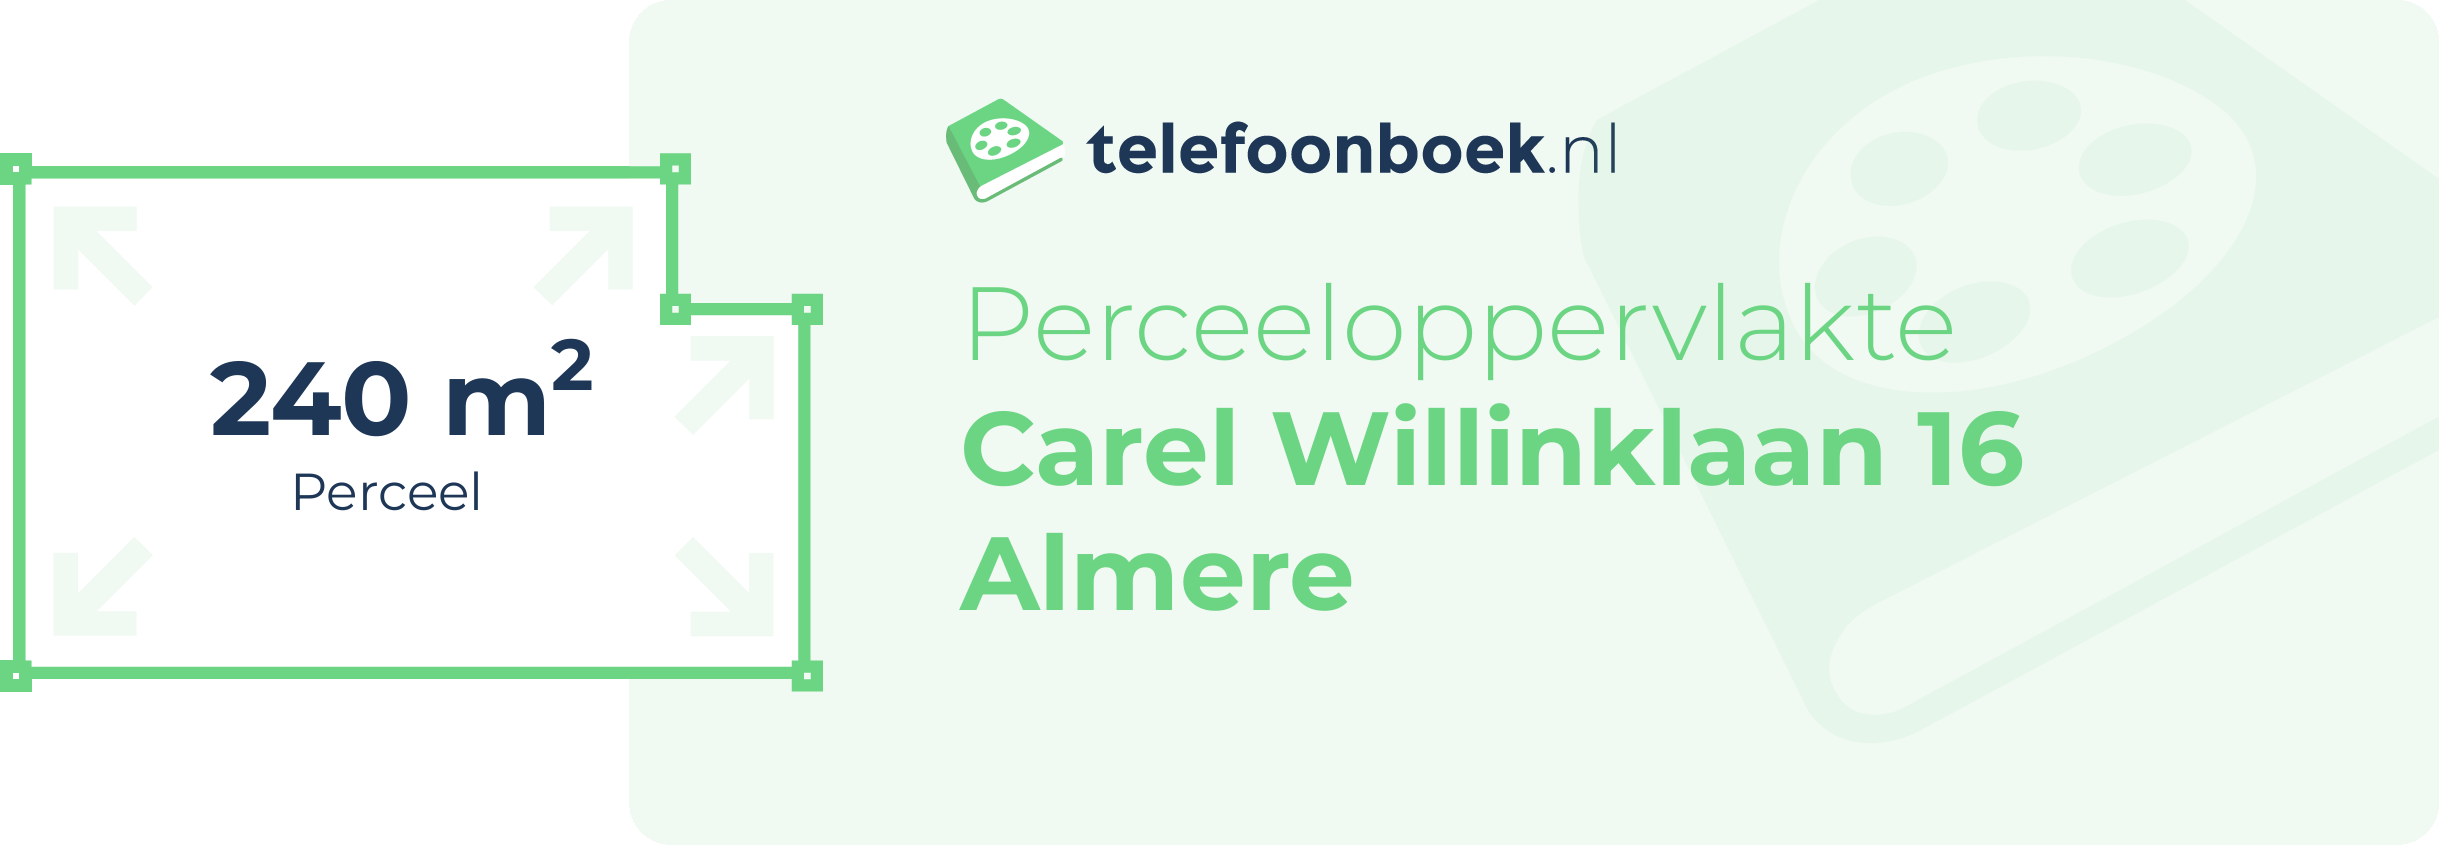 Perceeloppervlakte Carel Willinklaan 16 Almere